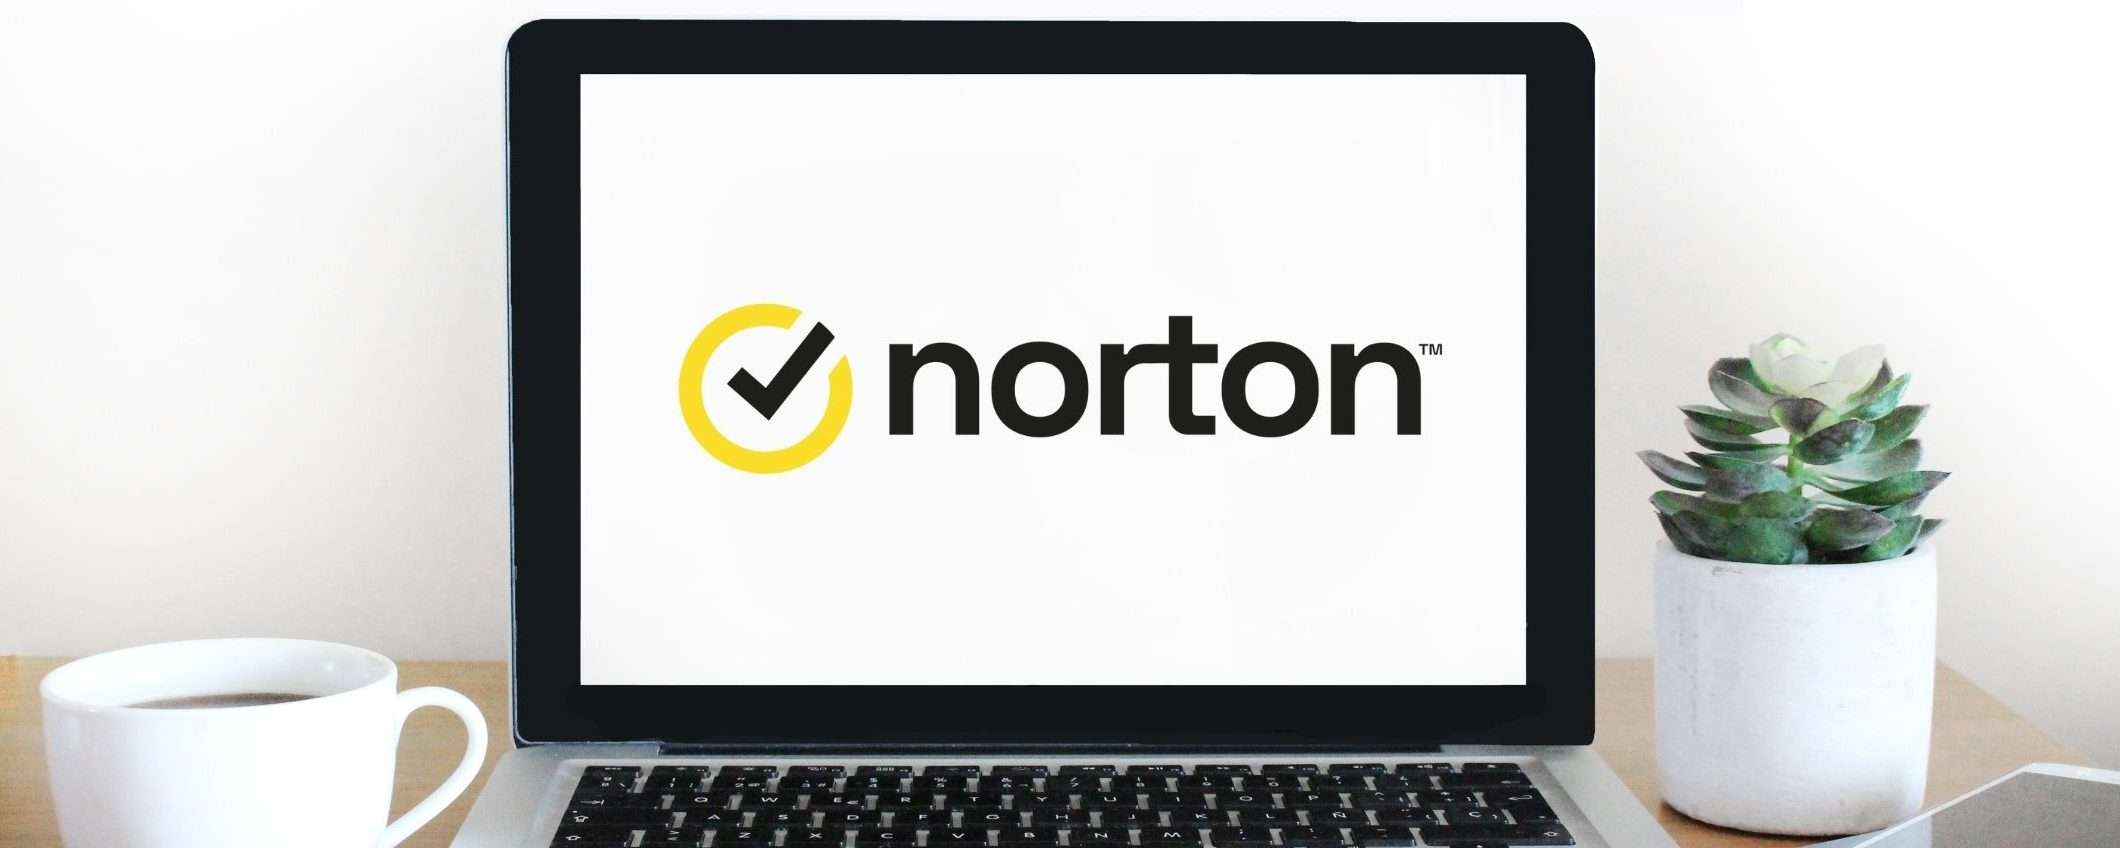 Norton 360: super PROMO antivirus e VPN a meno di 3€/mese